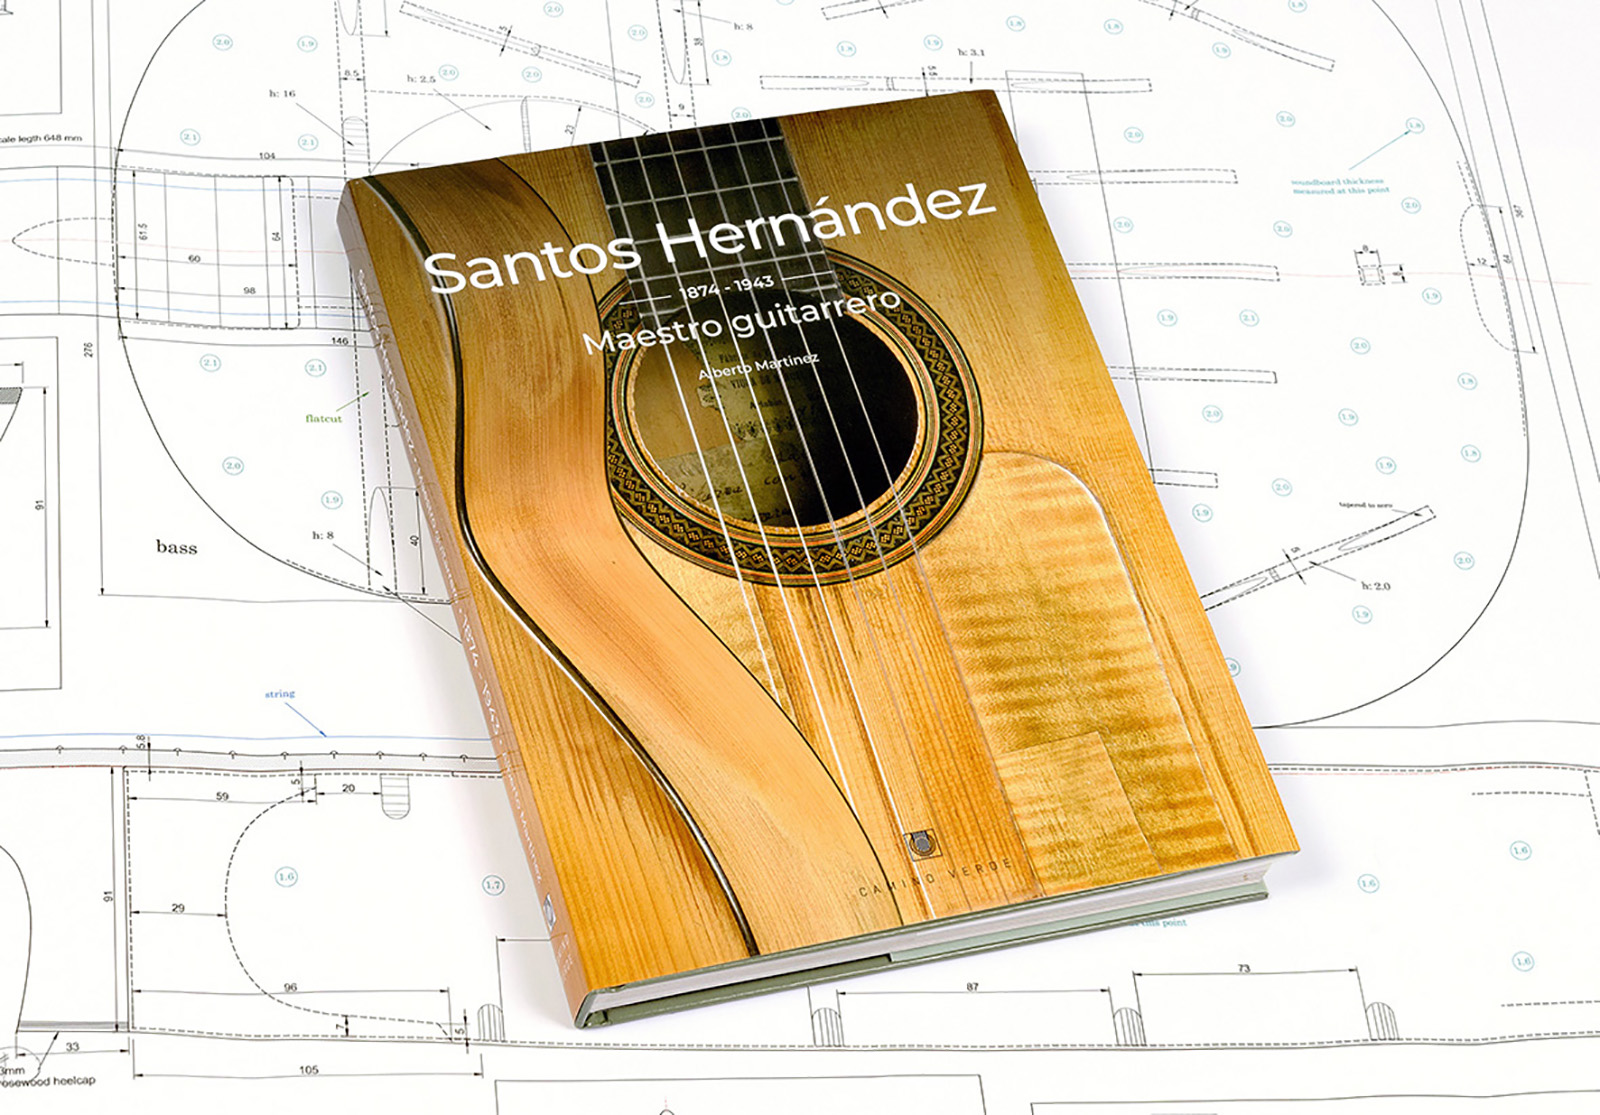 Santos Hernandez 1874-1943: Maestro Guitarrero